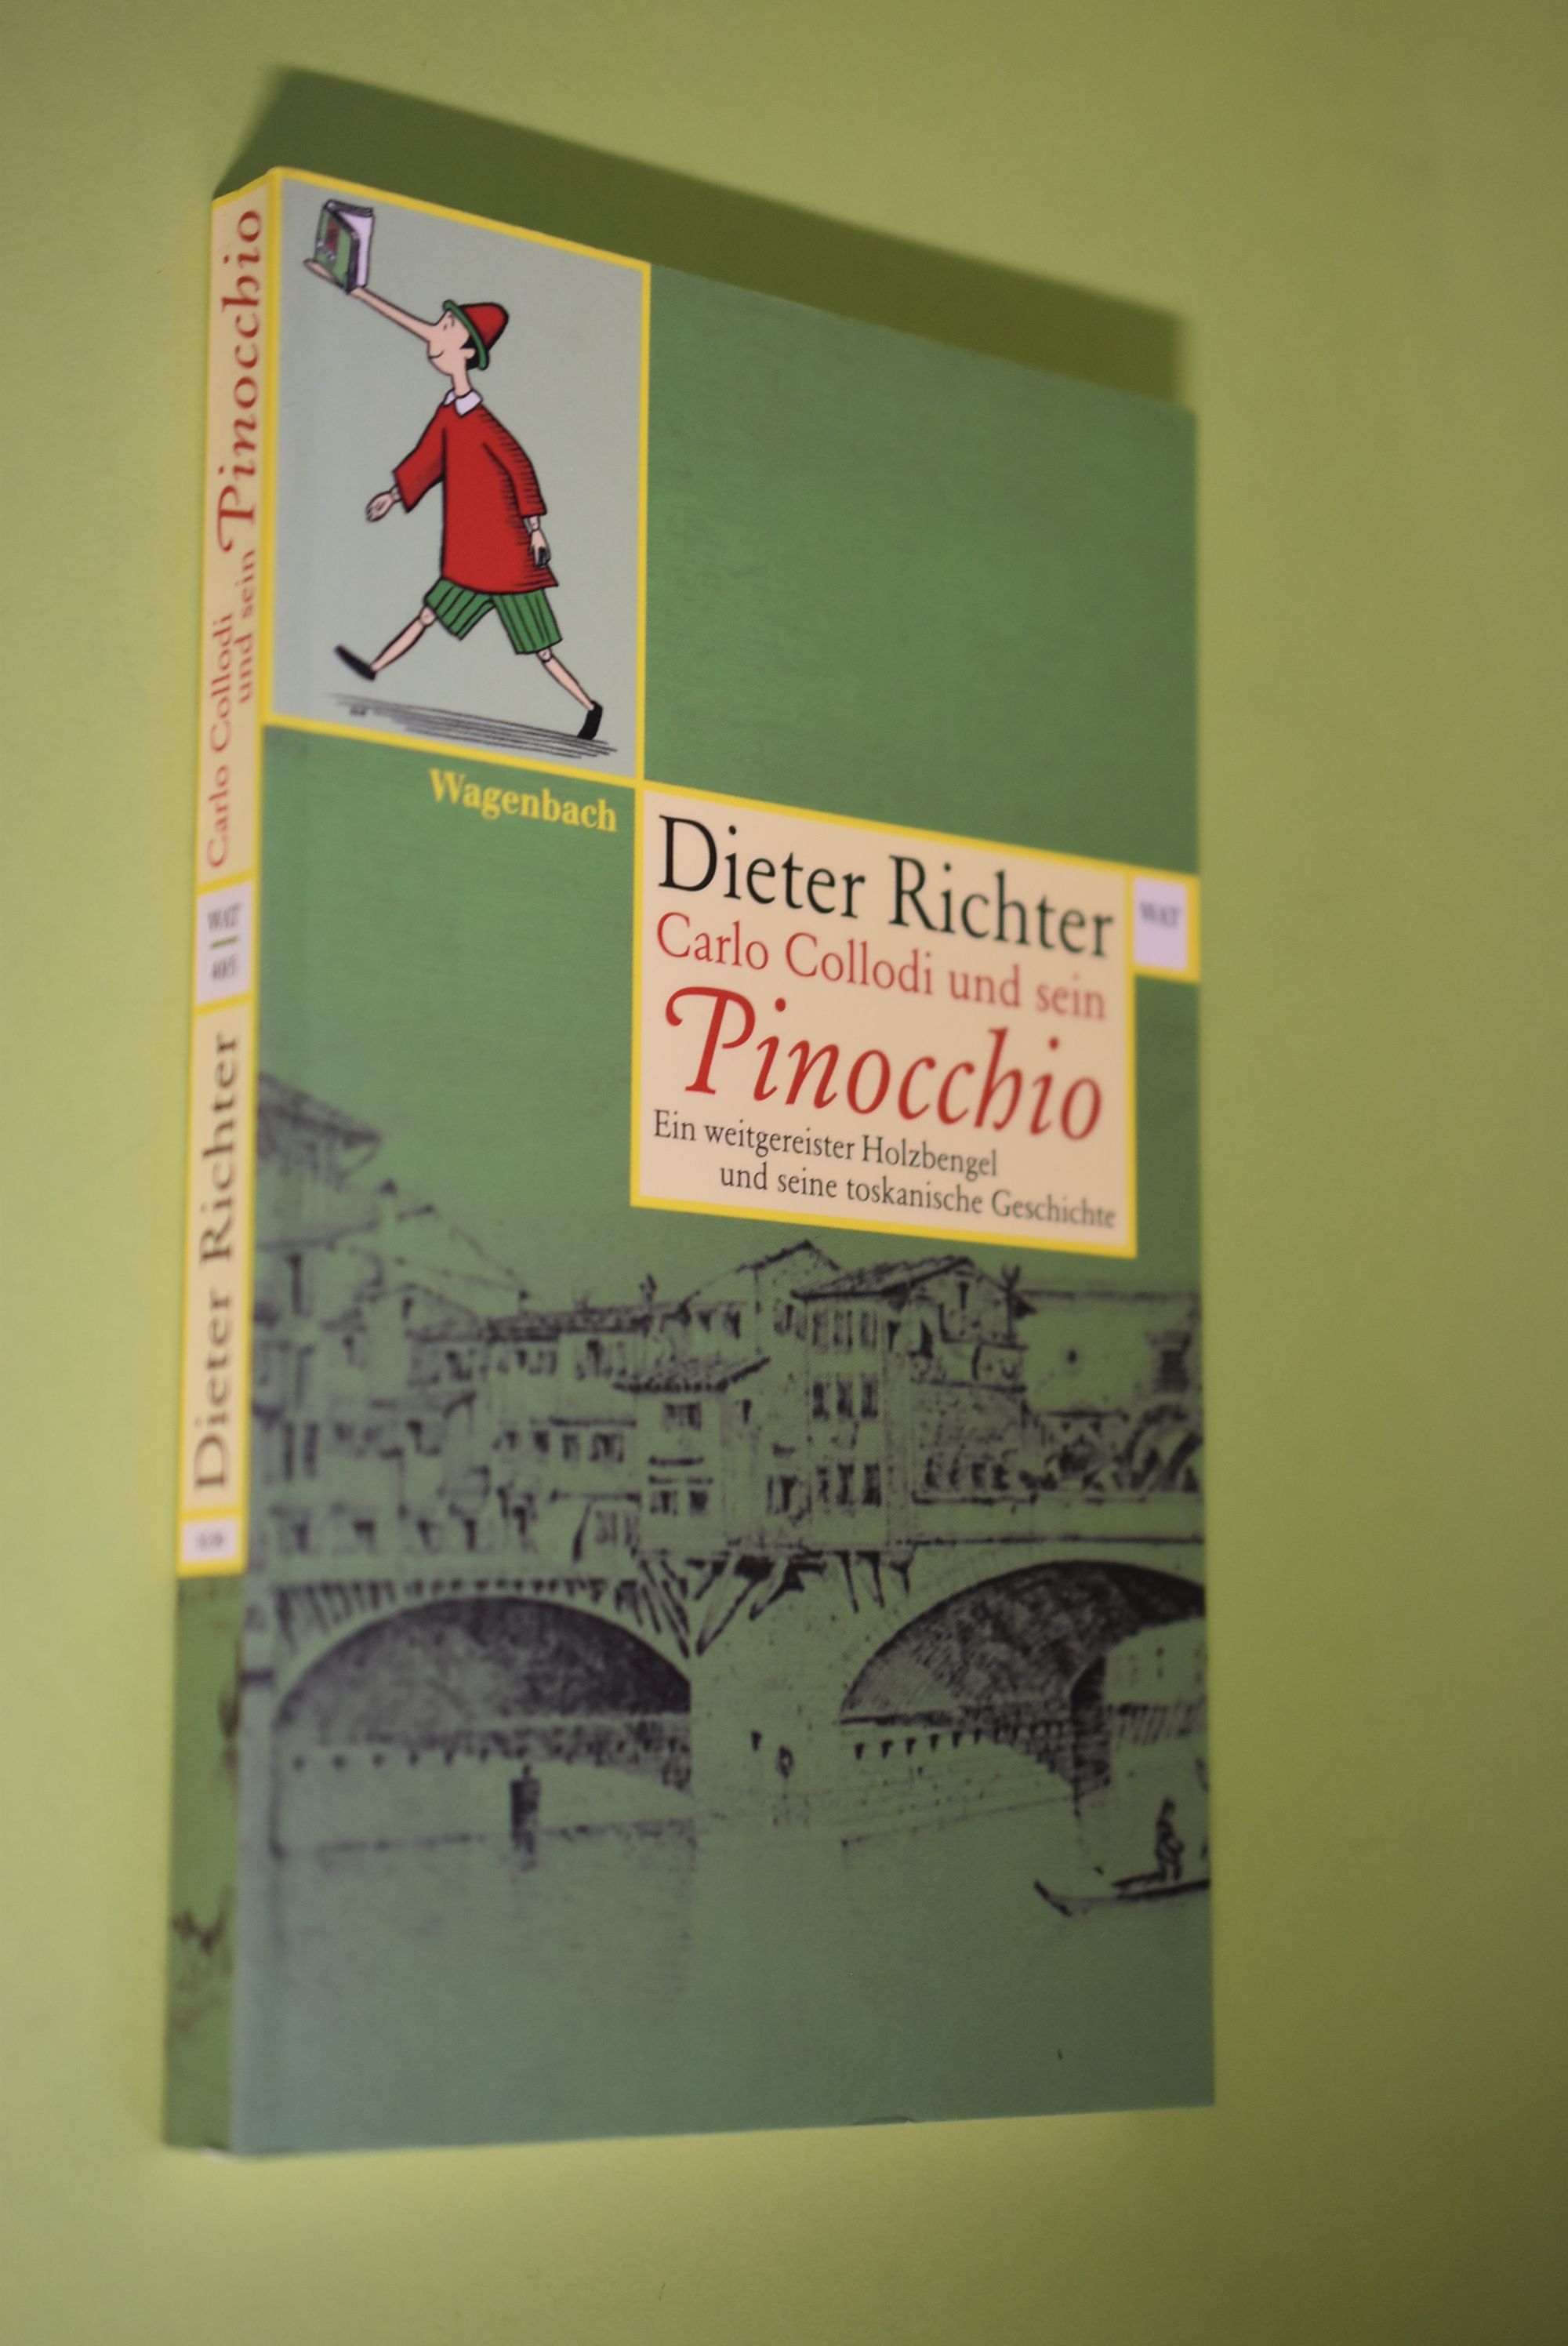 Carlo Collodi und sein Pinocchio : ein weitgereister Holzbengel und seine toskanische Geschichte. Wagenbachs Taschenbuch ; 495 - Richter, Dieter